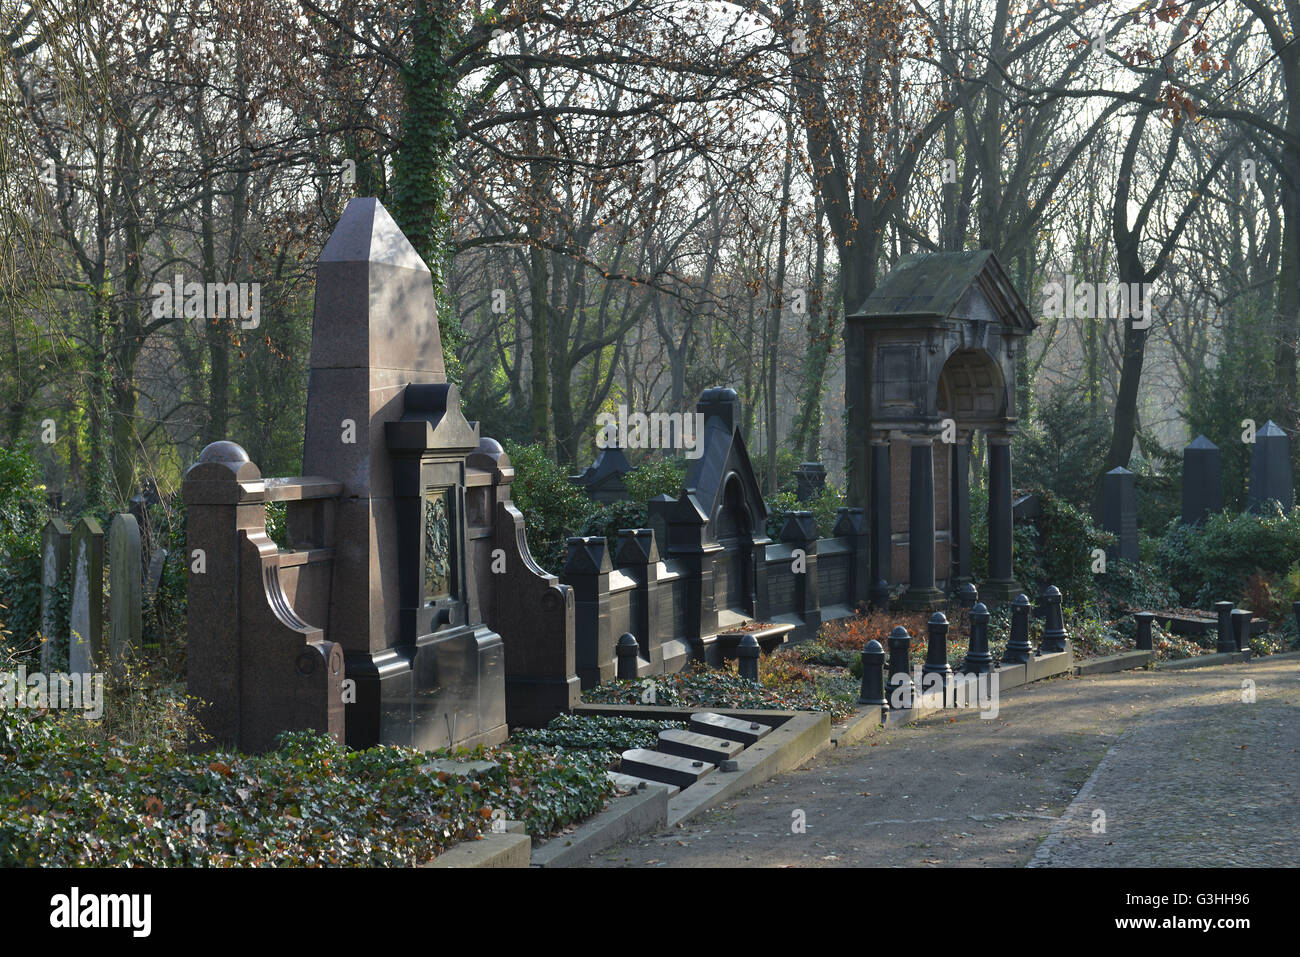 Juedischer Friedhof, Herbert-Baum-Strasse, Weissensee, Berlin, Deutschland Stock Photo